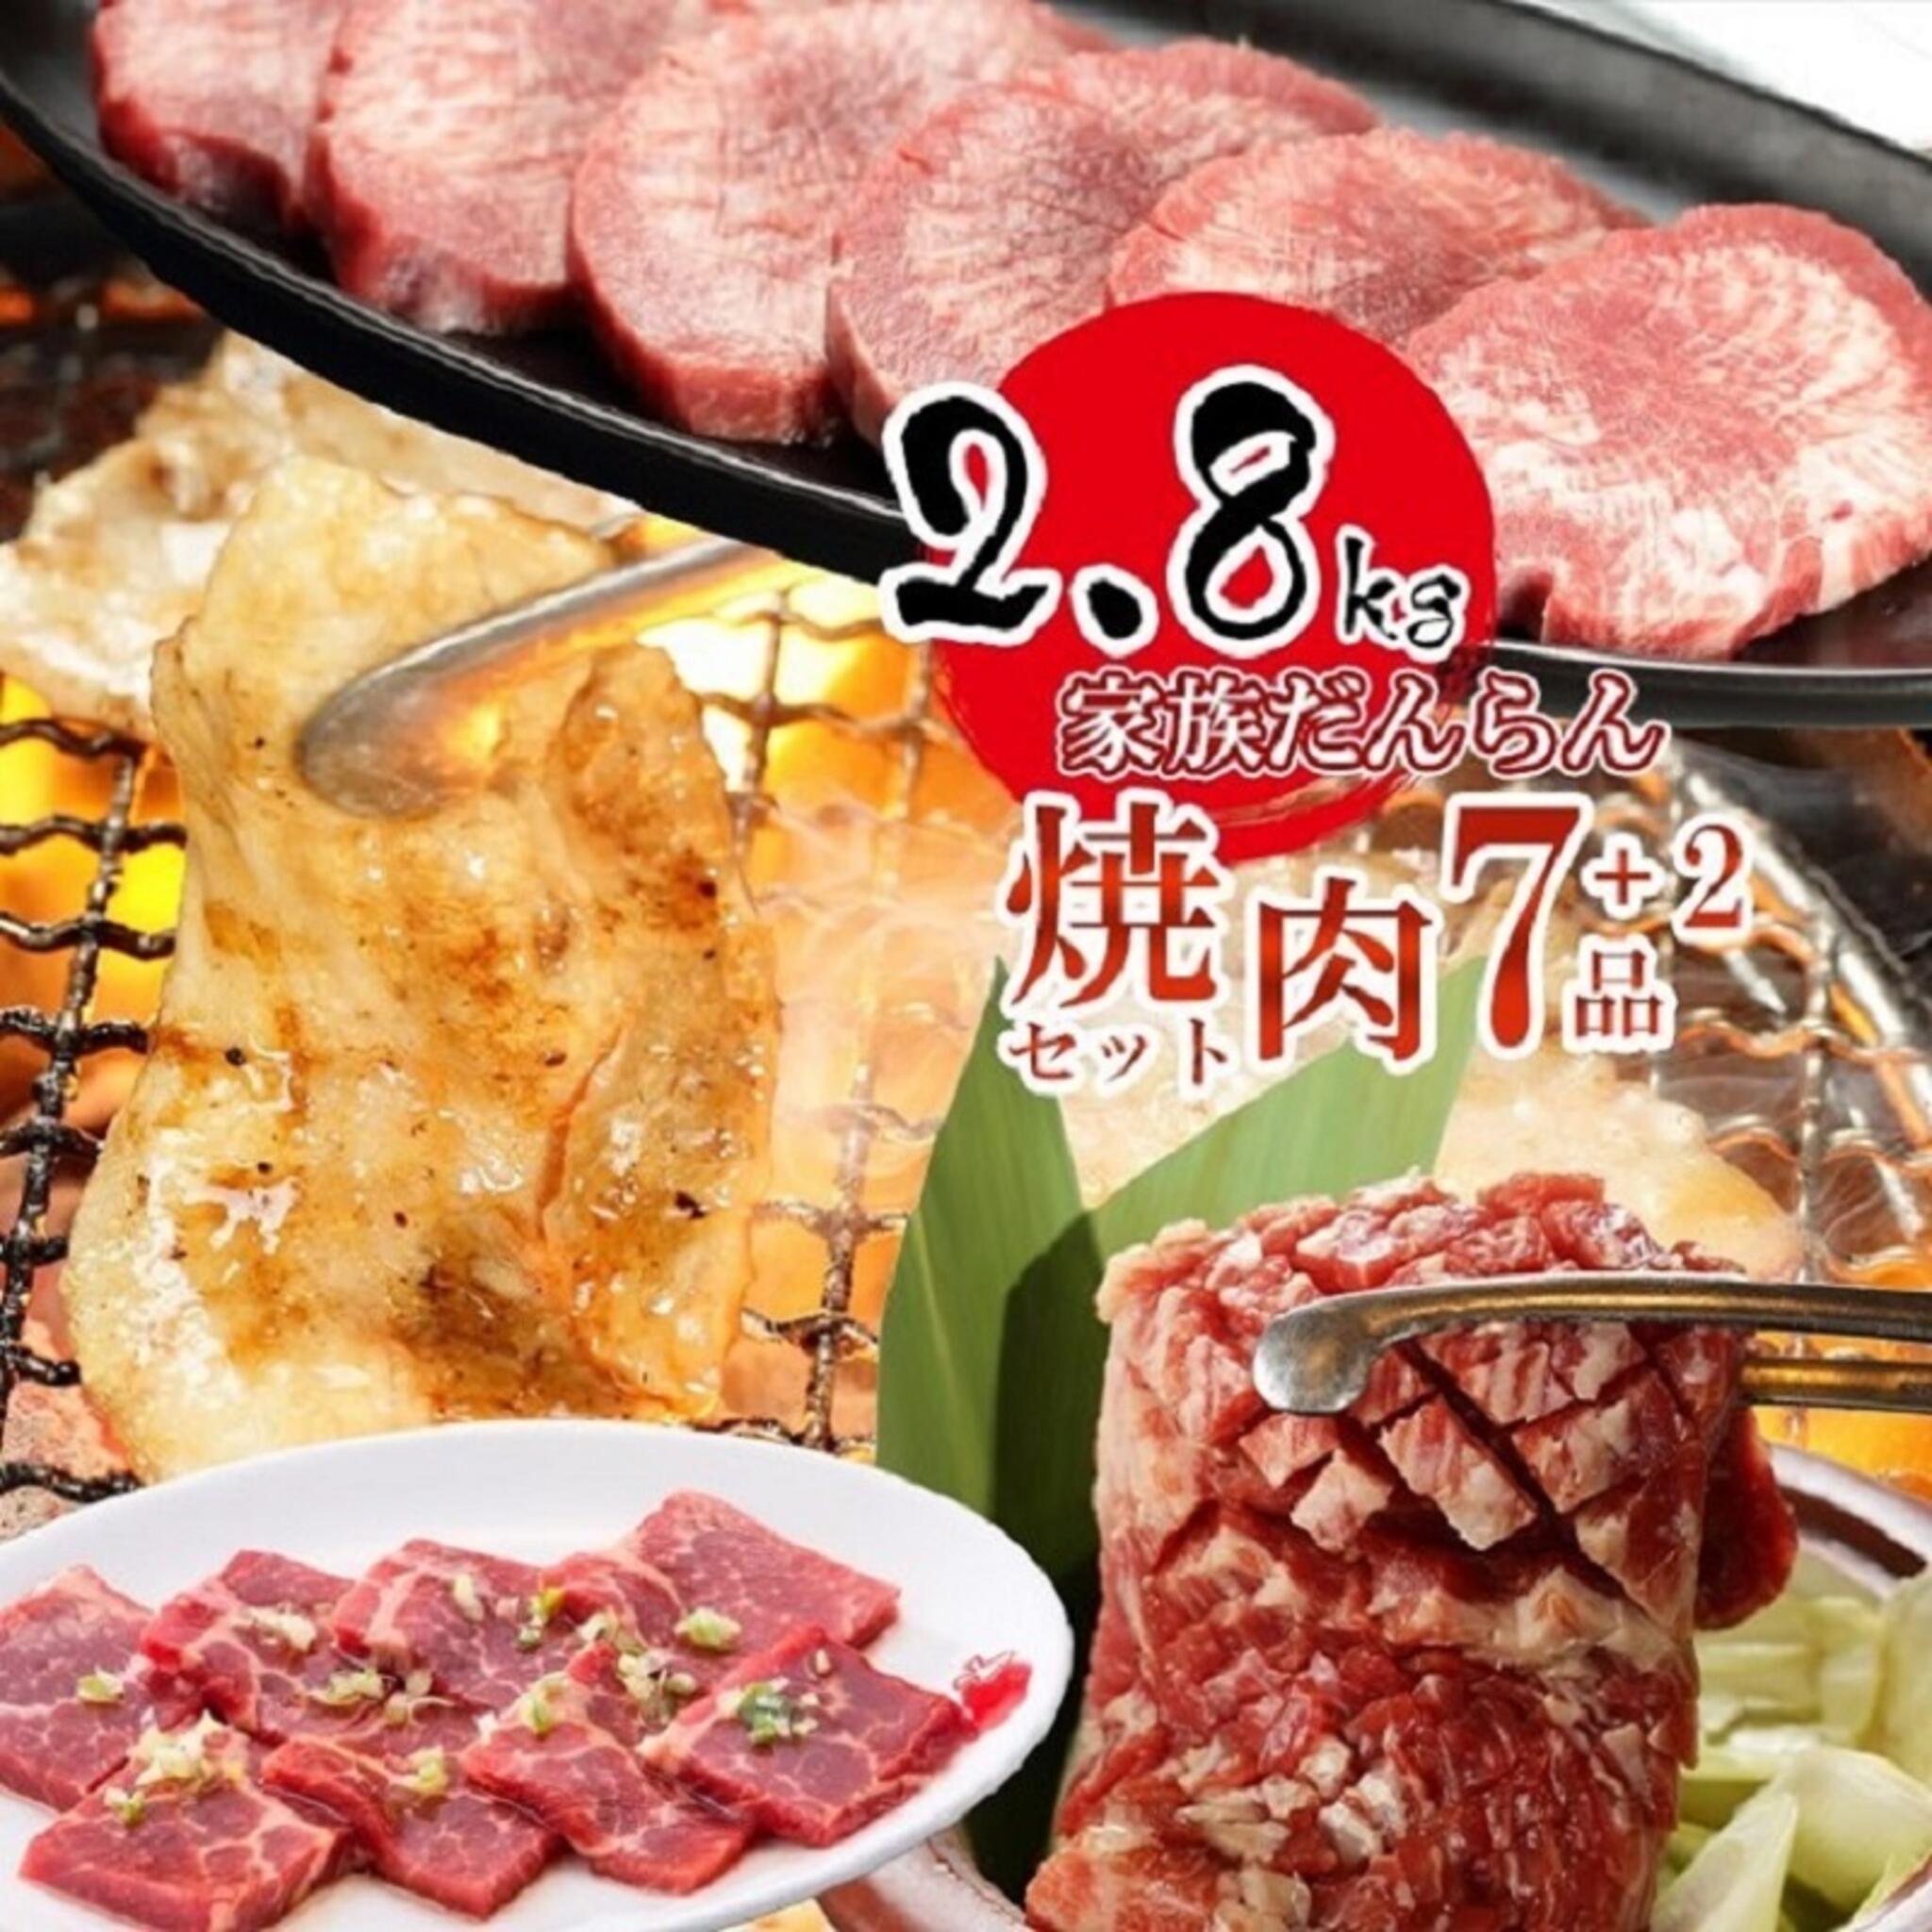 焼肉冷麺やまなか家 上田バイパス店からのお知らせ(【おうち焼肉特集】)に関する写真